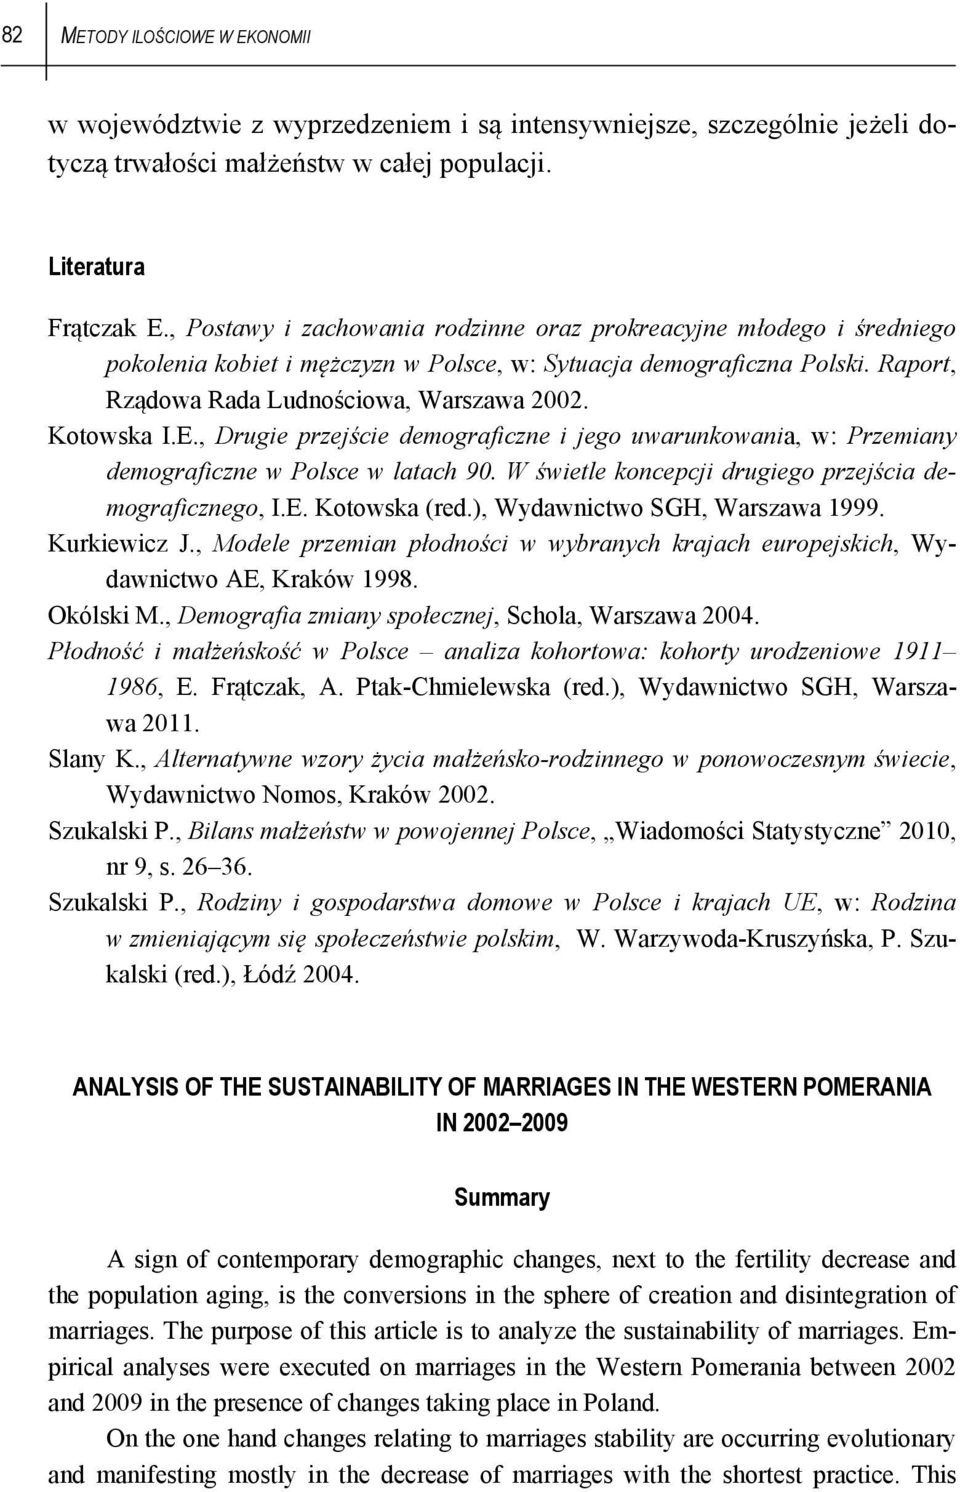 Kotowska I.E., Drugie przejście demograficzne i jego uwarunkowania, w: Przemiany demograficzne w Polsce w latach 90. W świetle koncepcji drugiego przejścia demograficznego, I.E. Kotowska (red.